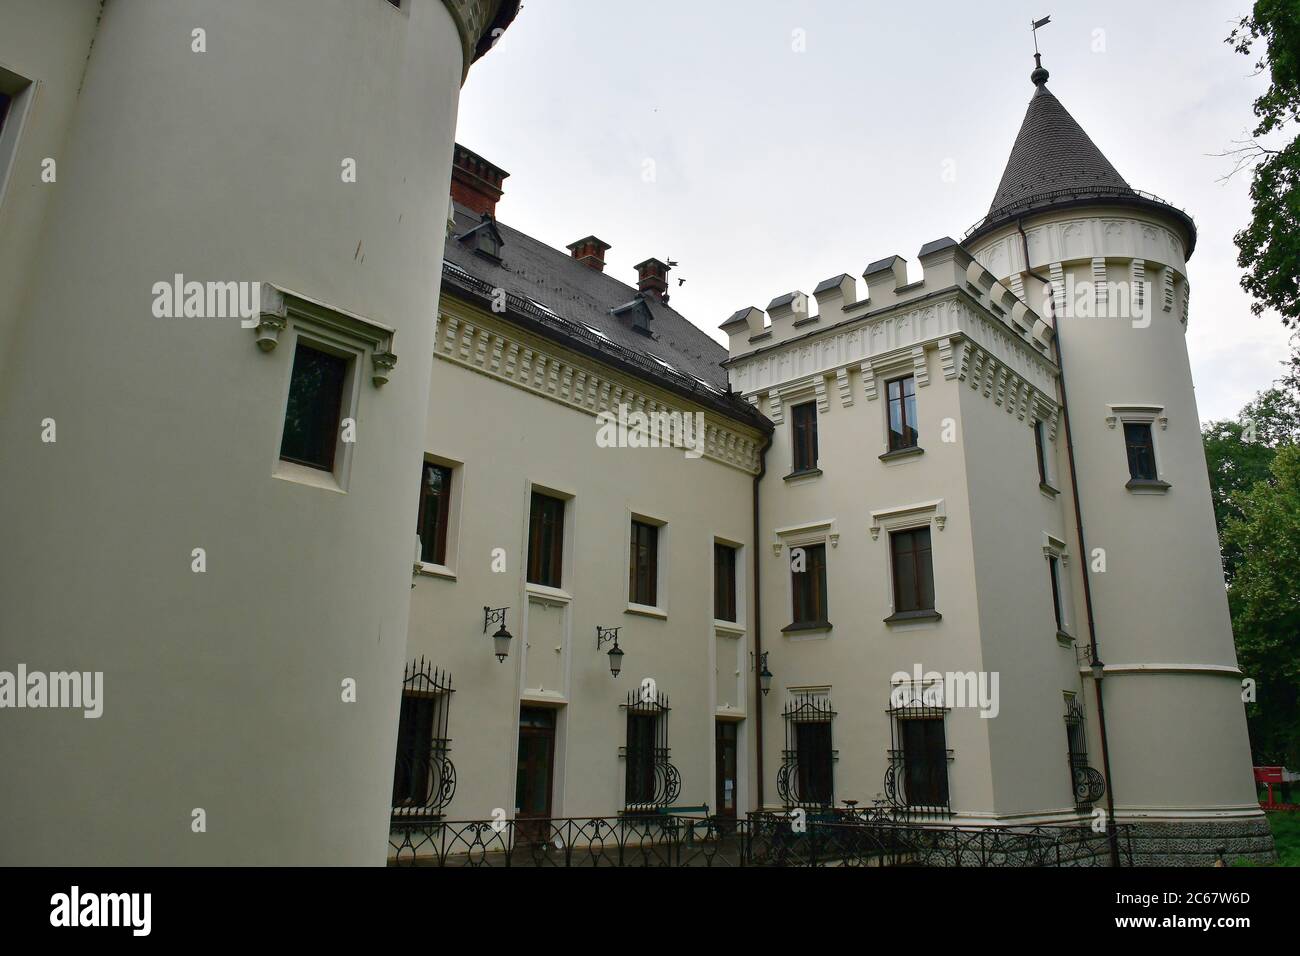 Karolyi castle in Carei, Romania, Europe. Károlyi-kastély Nagykárolyban. Stock Photo